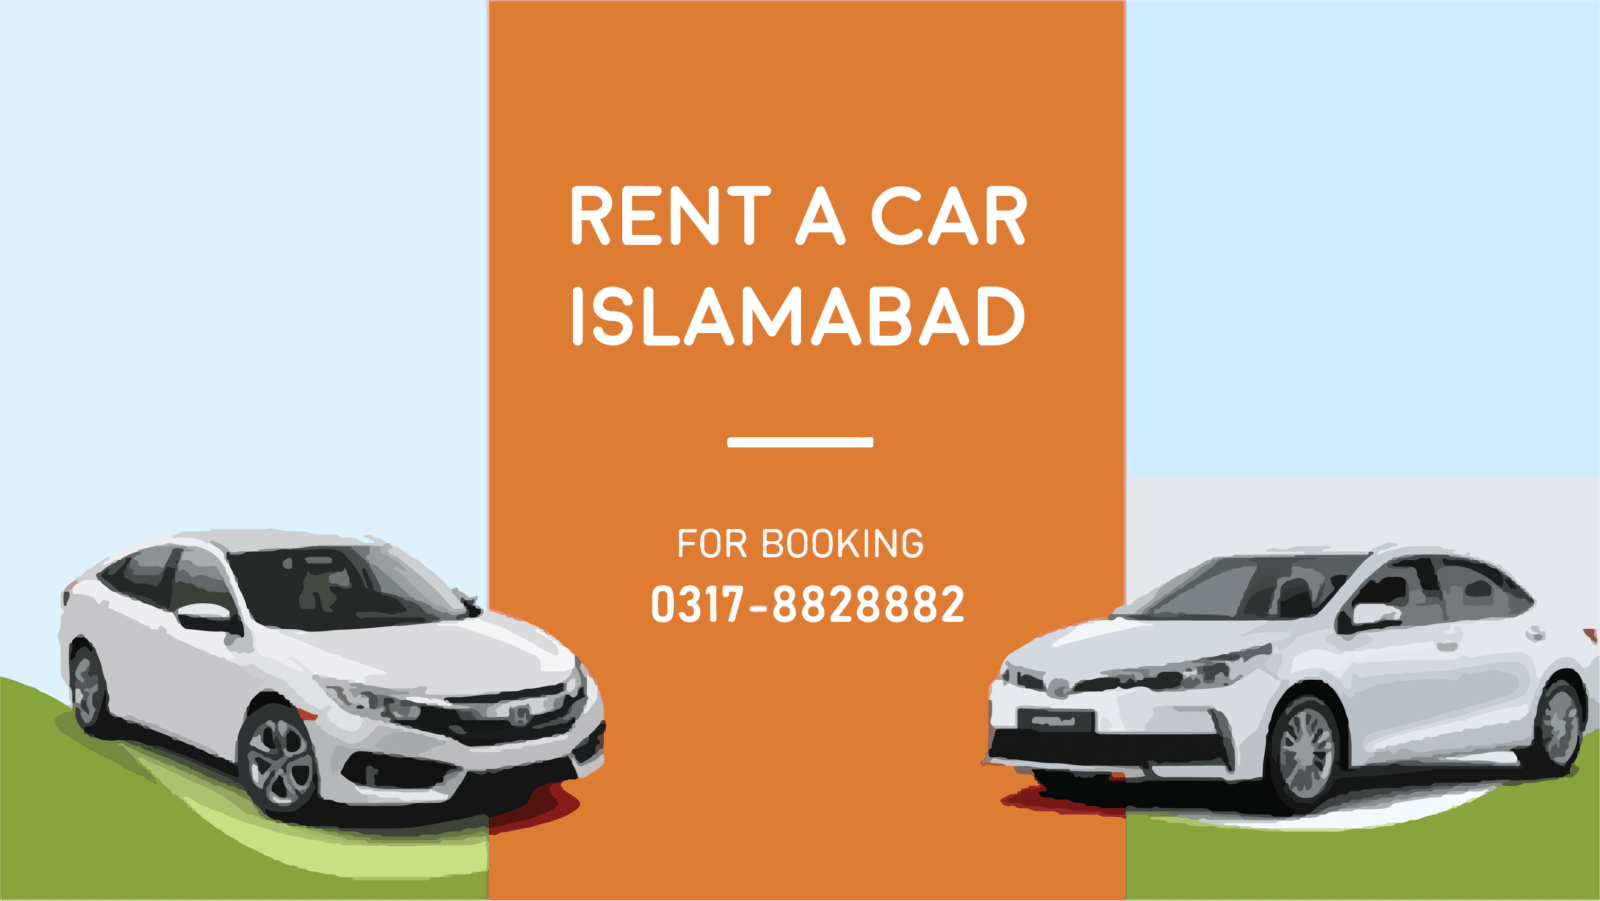 Rent a car Islamabad - Rentkea.com